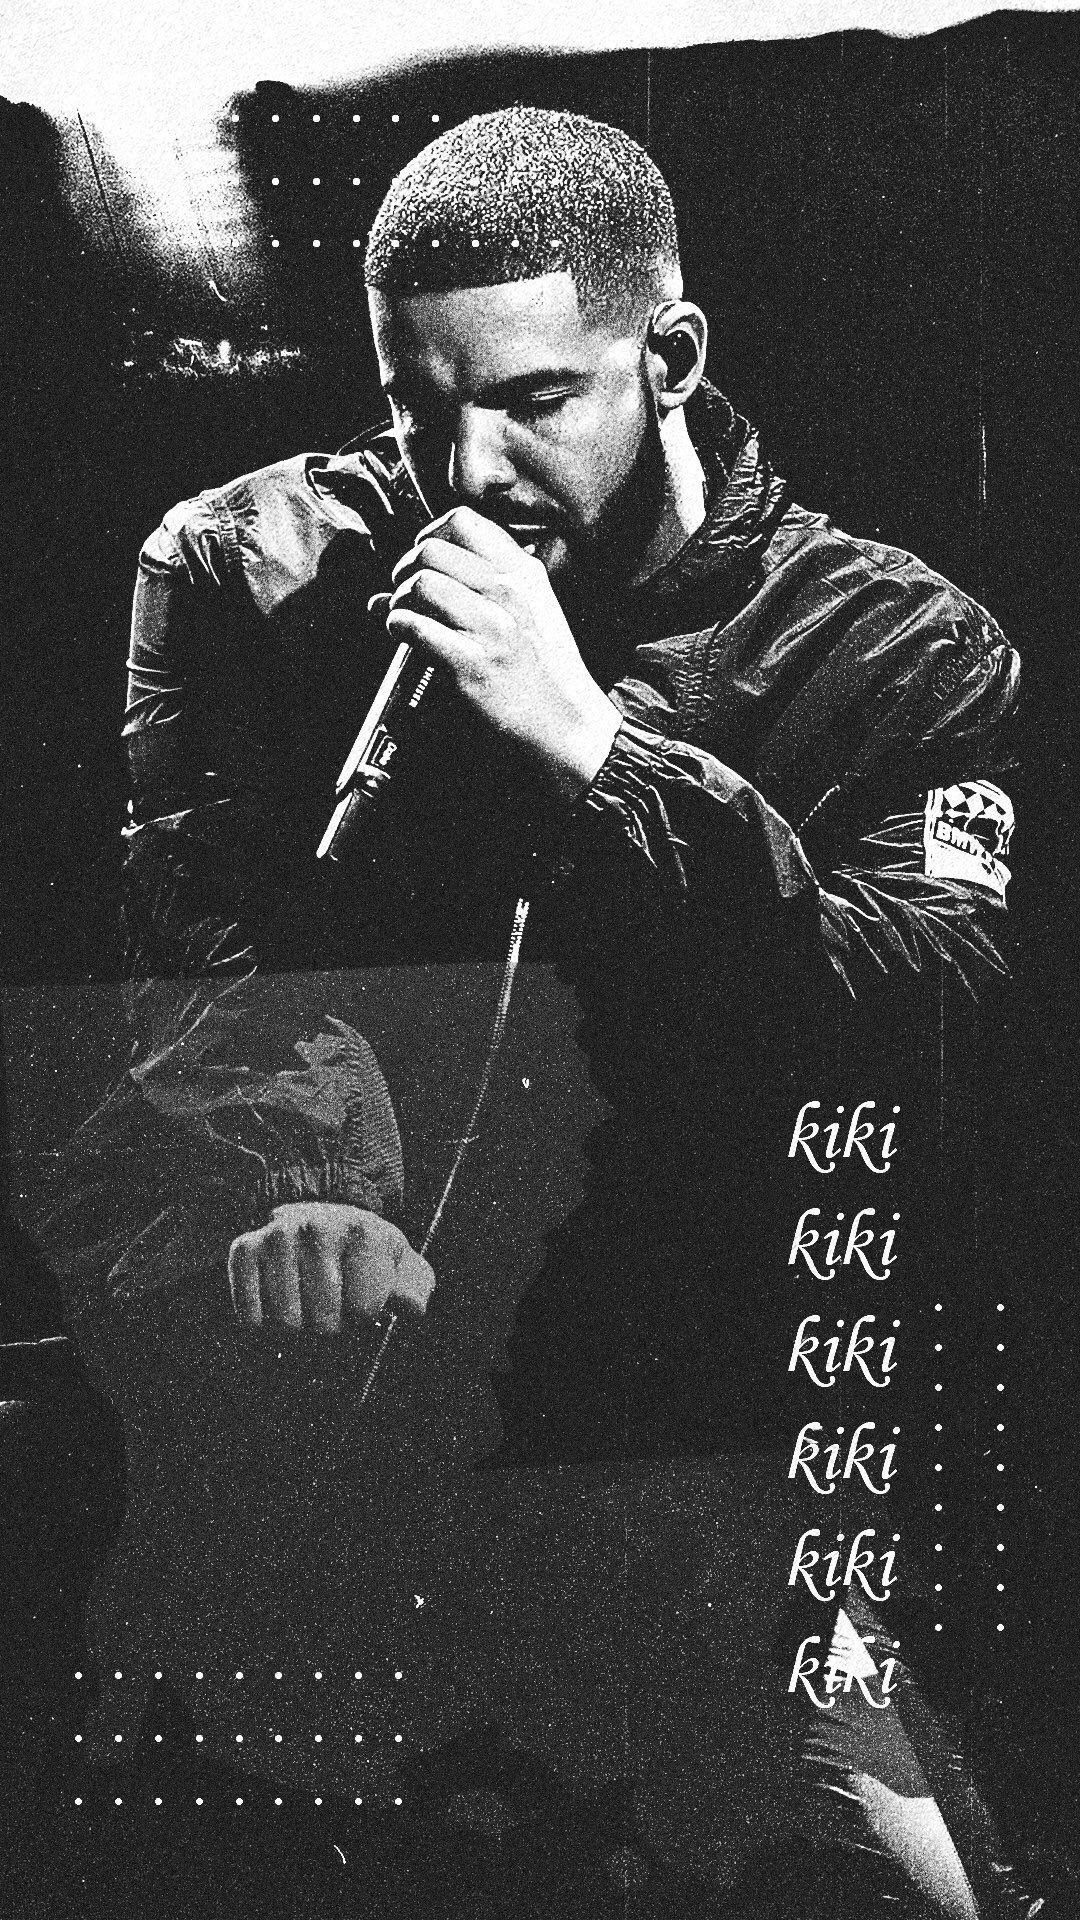 Wallpaper of Drake singing with the lyrics 